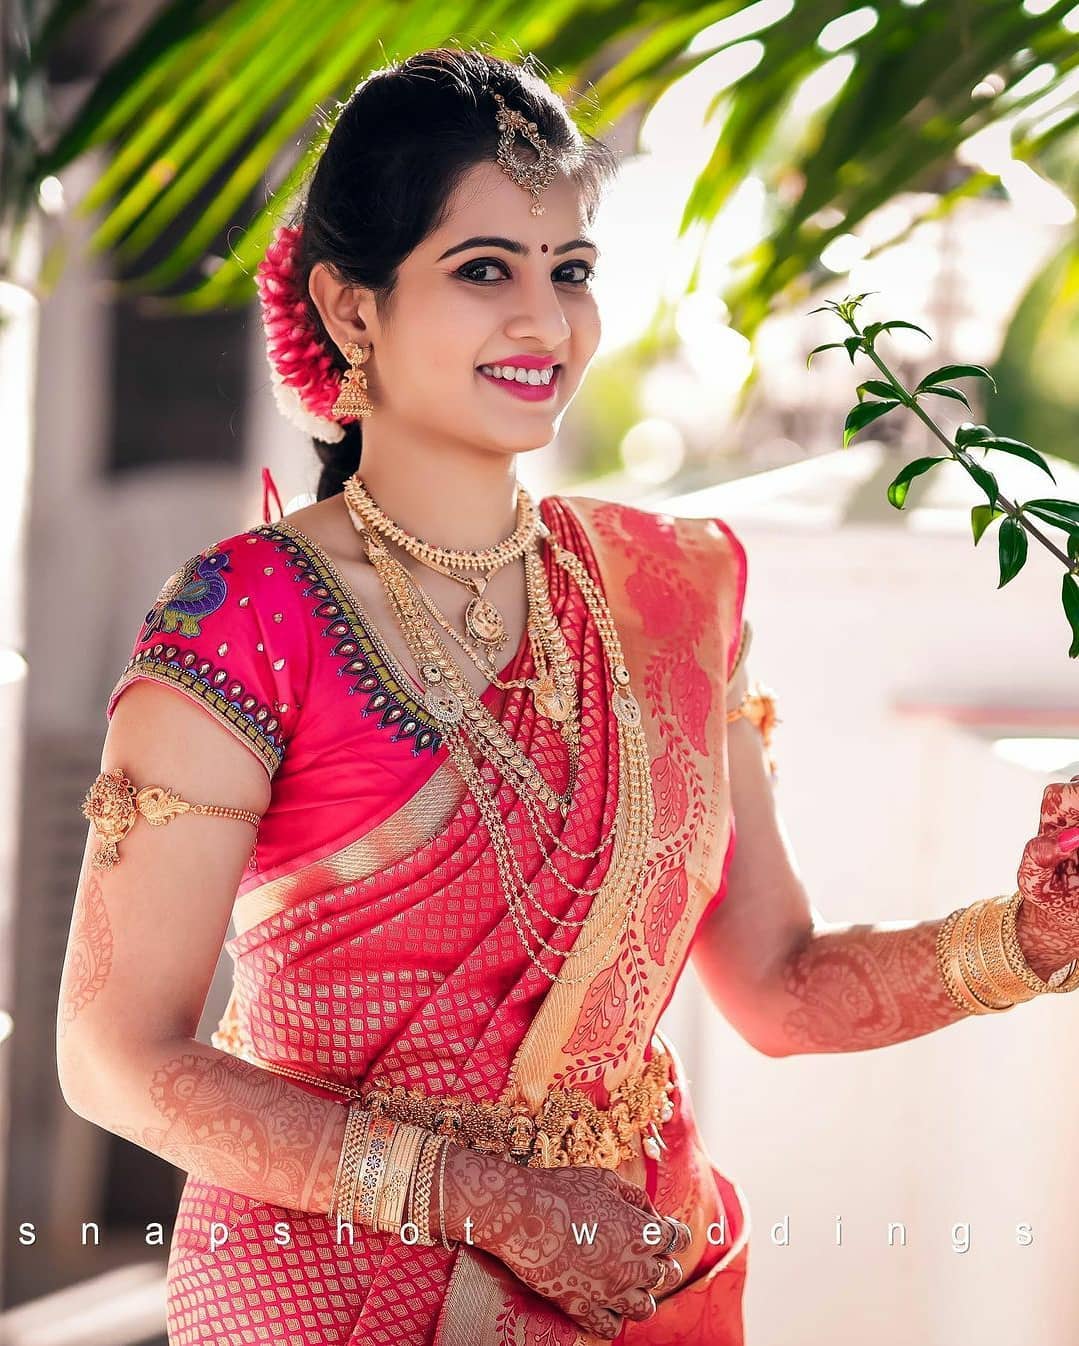 South Indian Wedding Hairstyles 13 Amazing Ideas  Keep Me Stylish